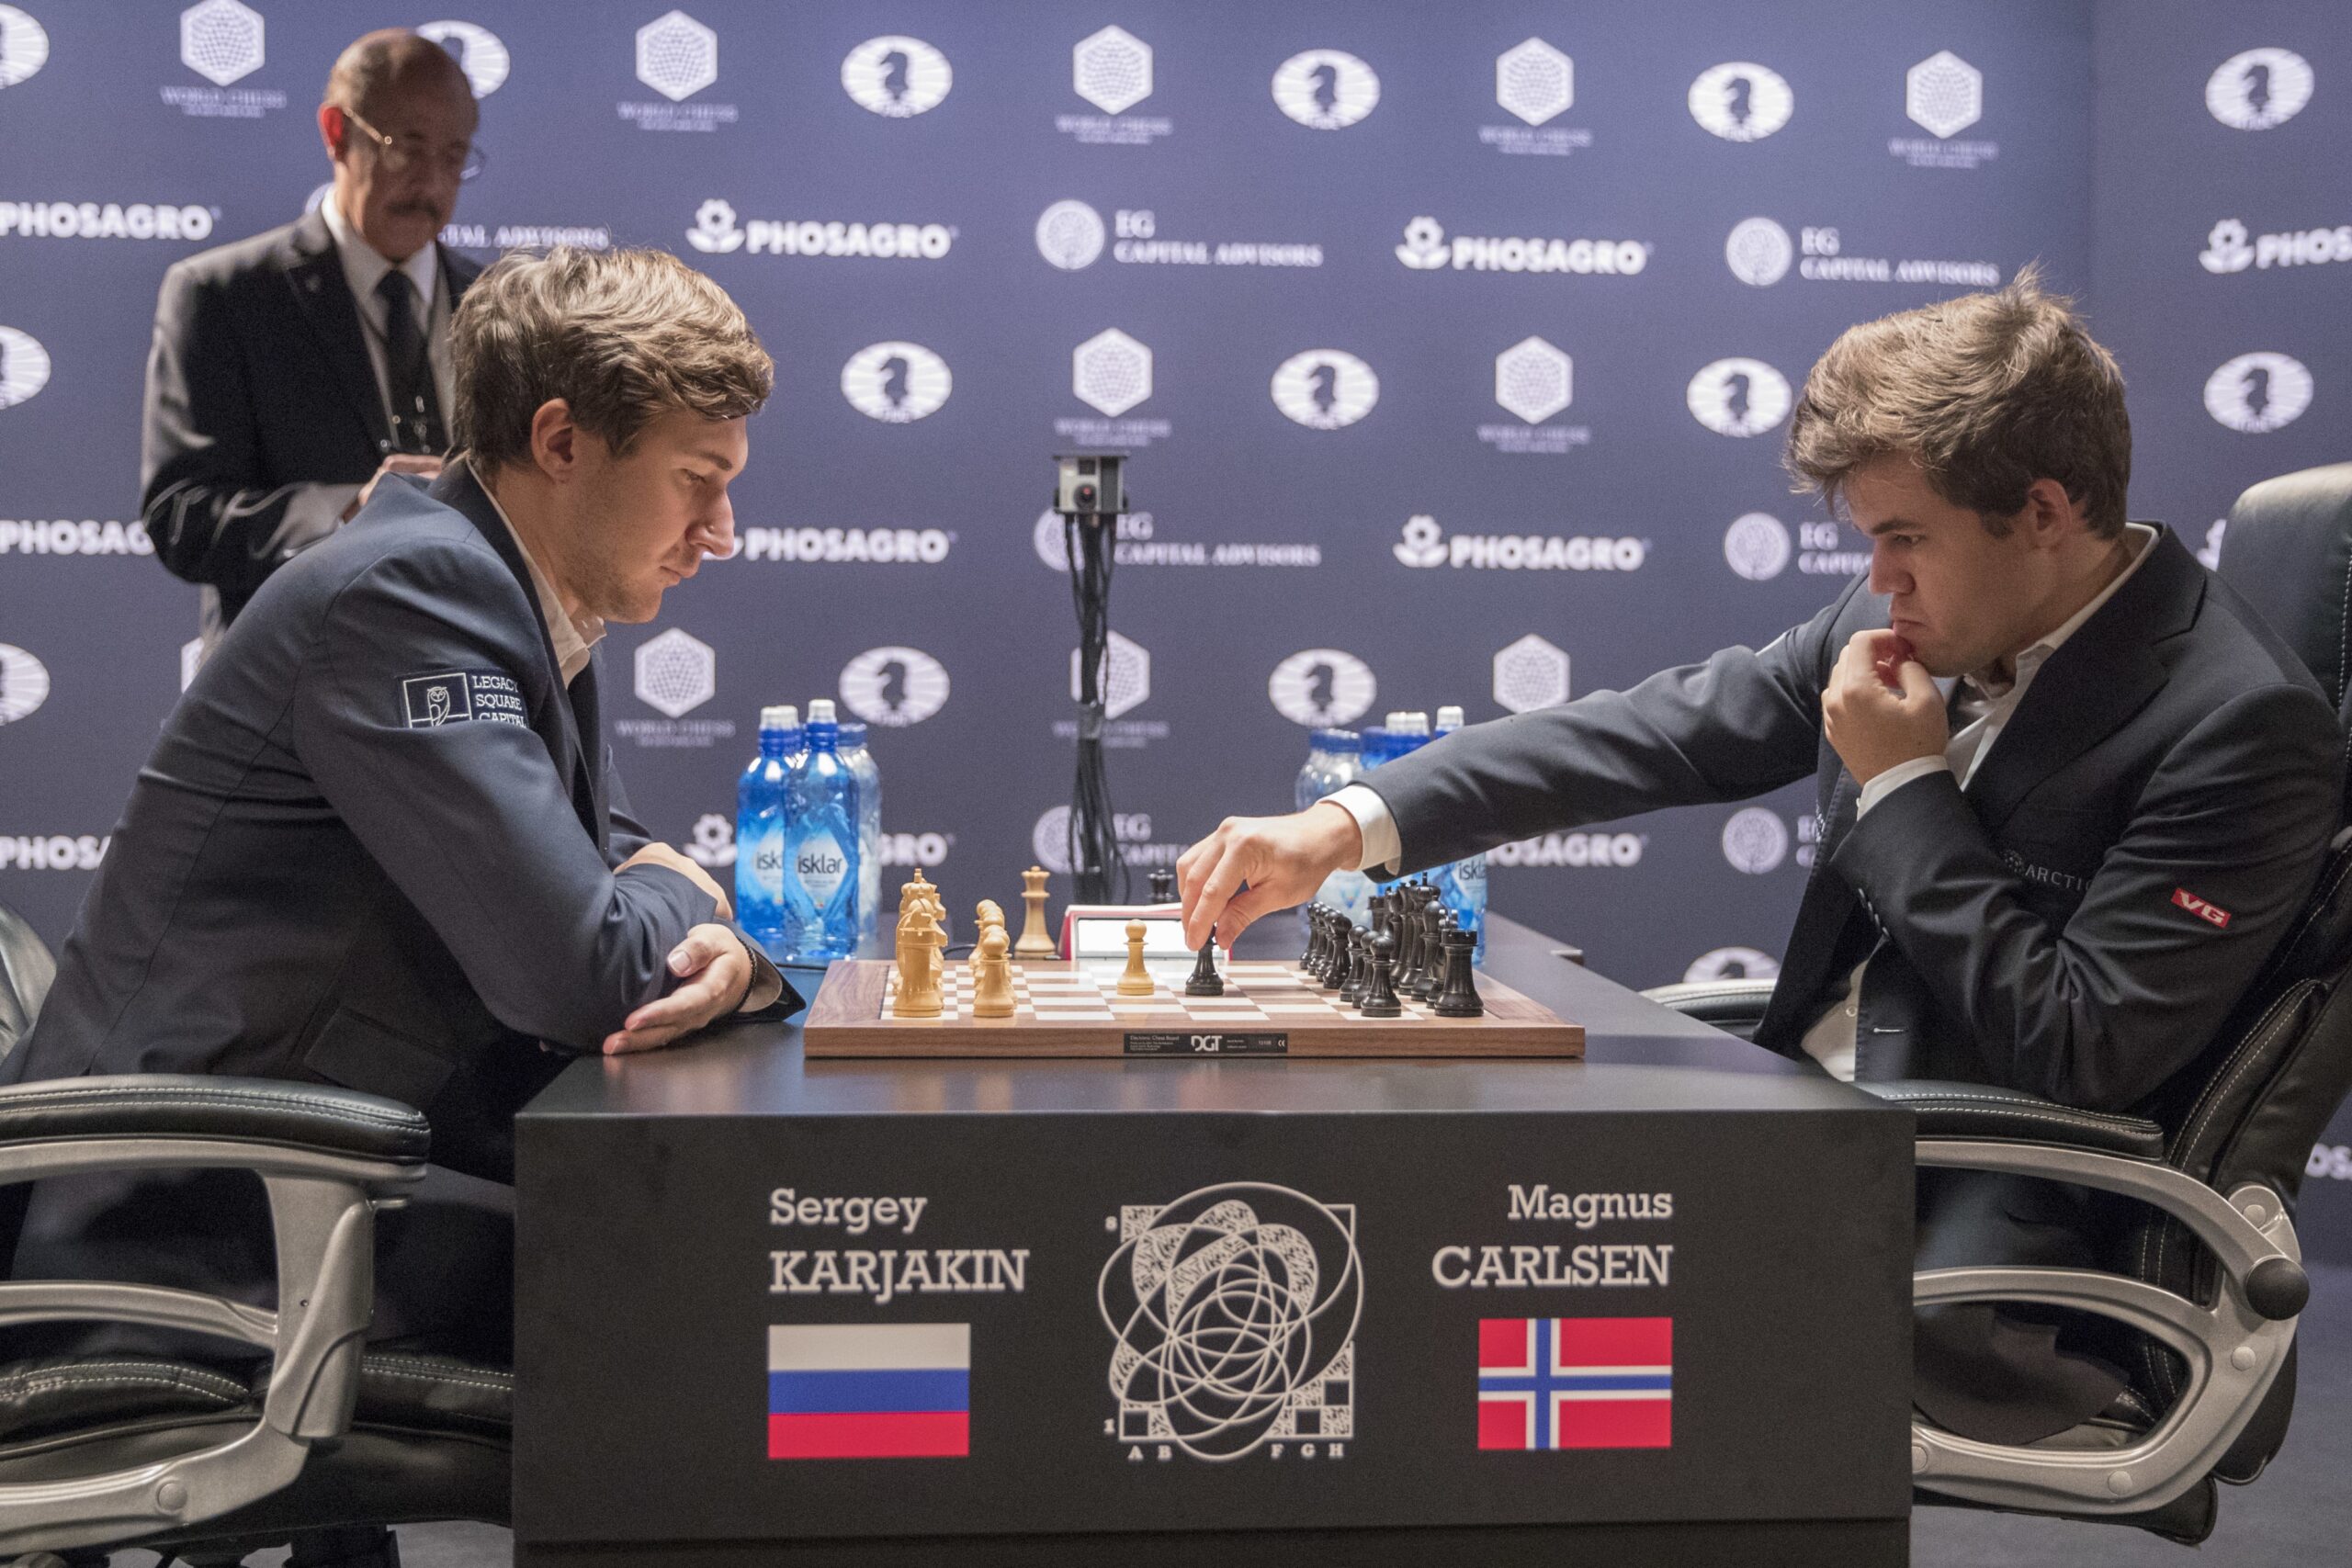 Magnus Carlsen and Sergey Karjakin playing chess